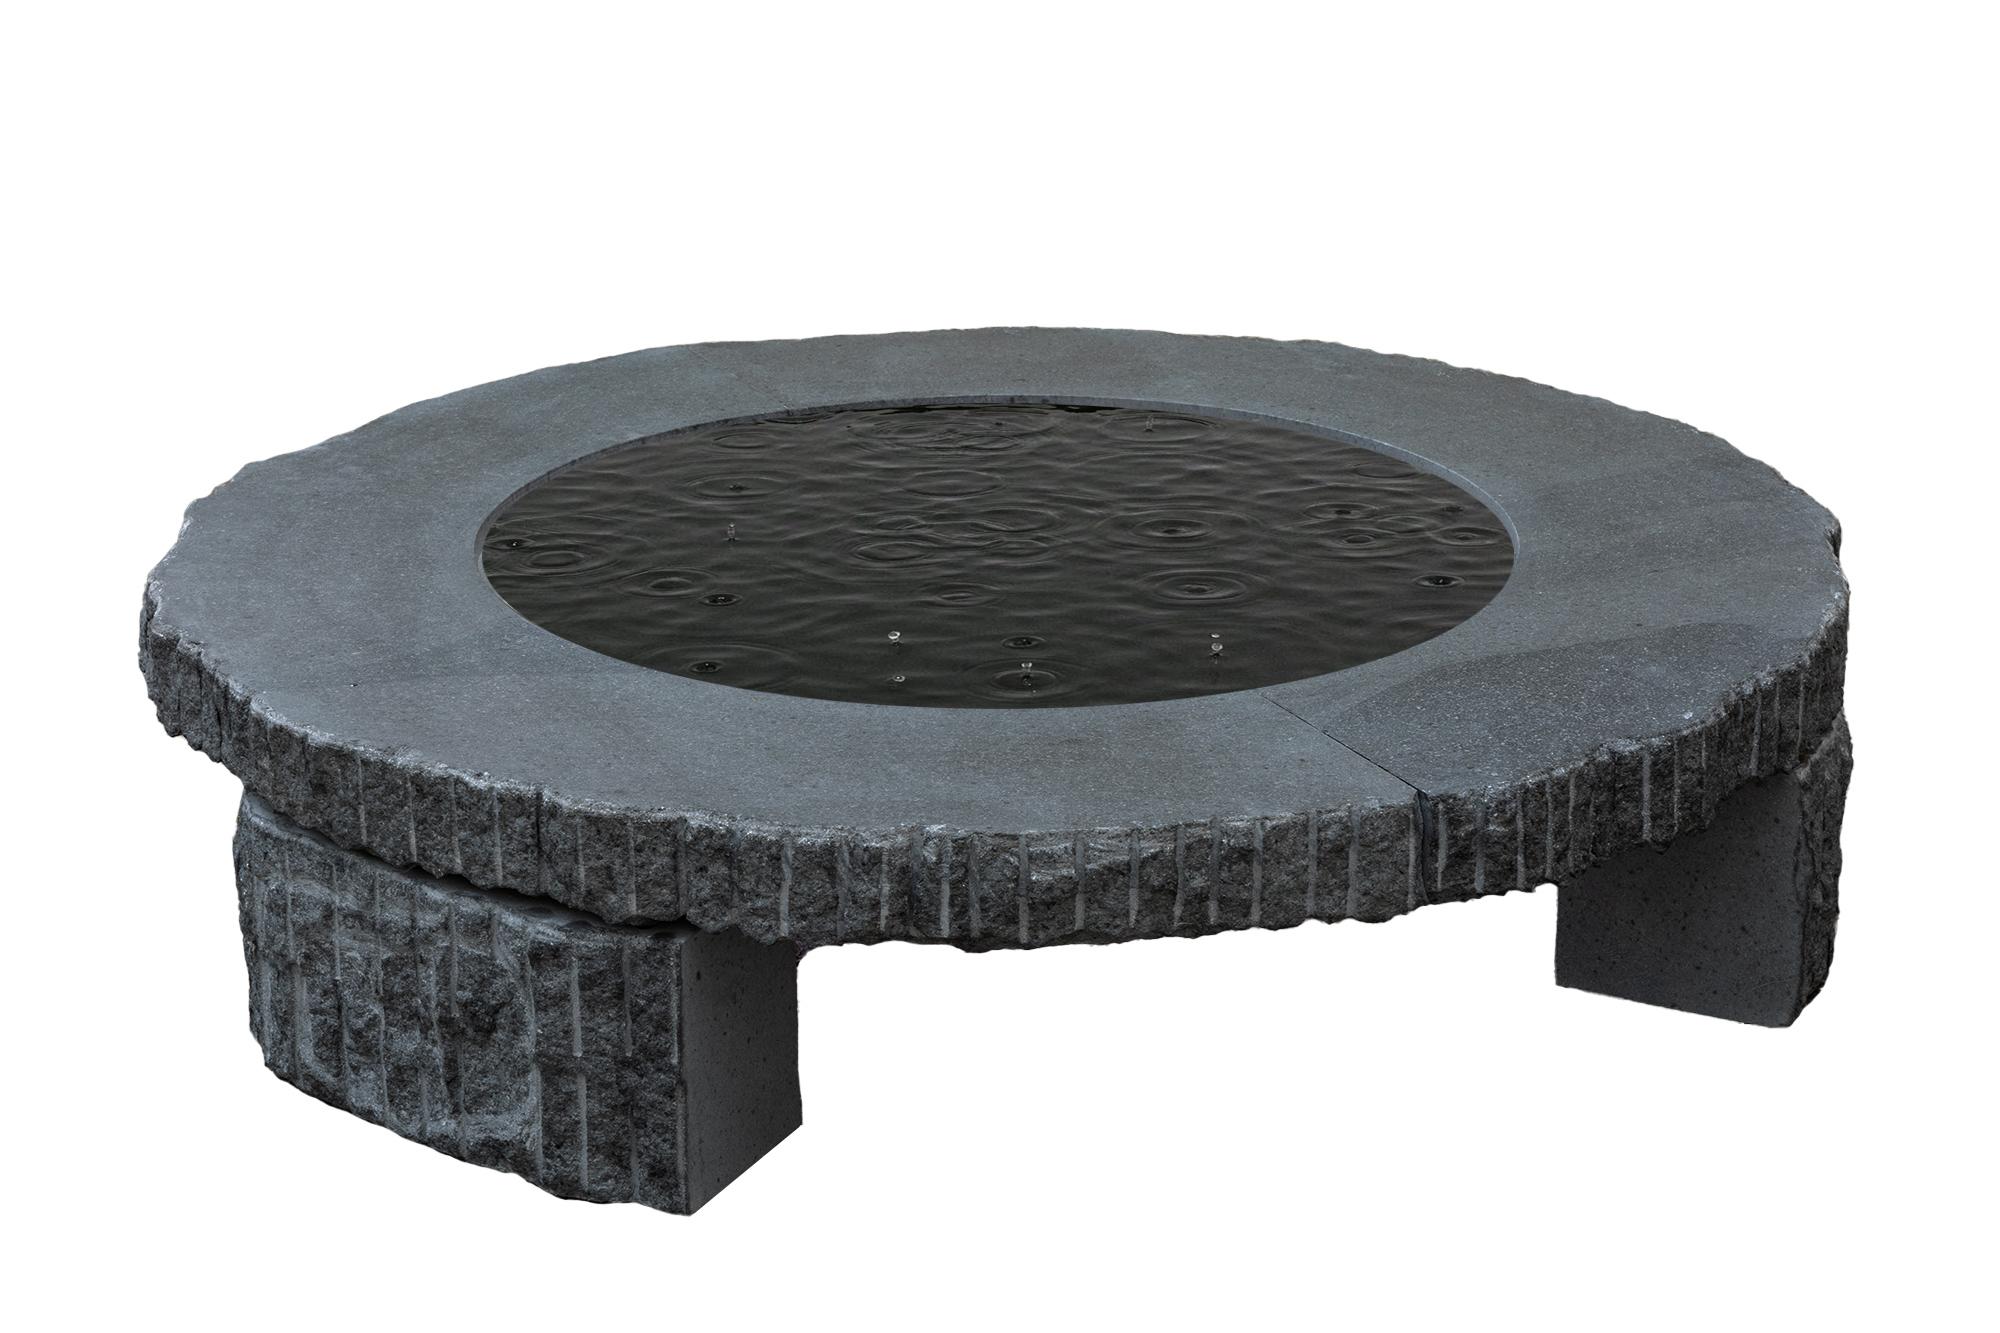 Une sculpture fonctionnelle. La table est composée de 6 parties : 3 pieds et 2 demi-cercles qui composent le plateau. Le plateau de la table est conçu de manière à ce qu'un cercle de verre puisse être installé à l'intérieur si on le souhaite. Sur